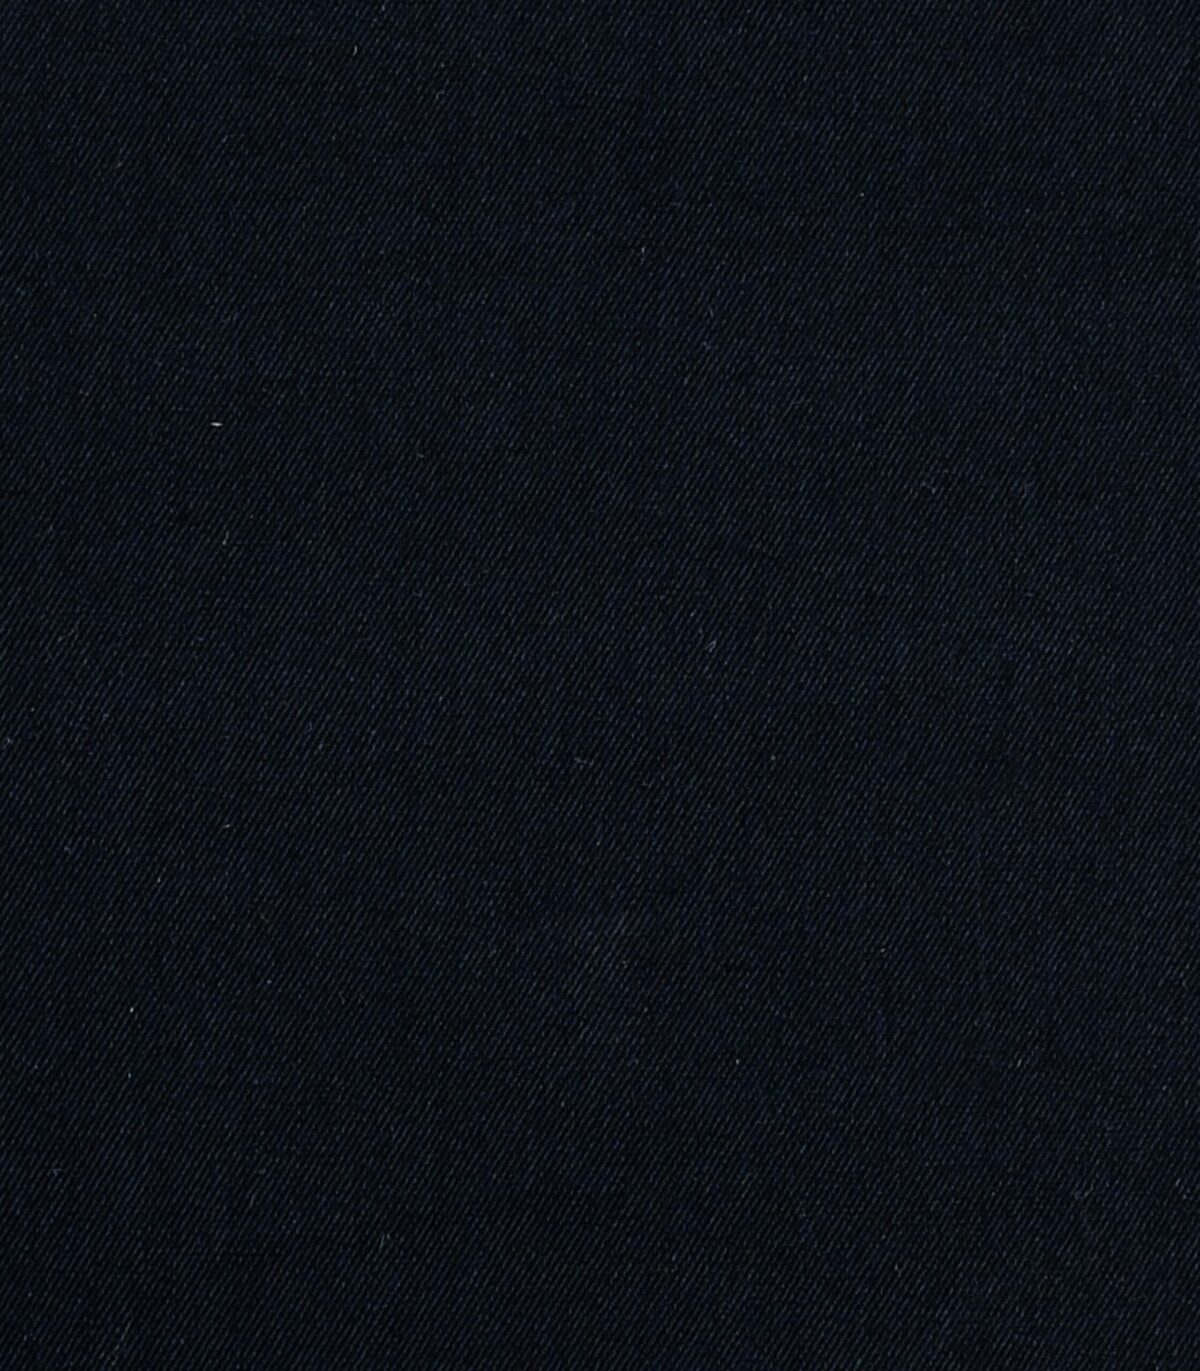 Cotton Black Color Drill Fabric